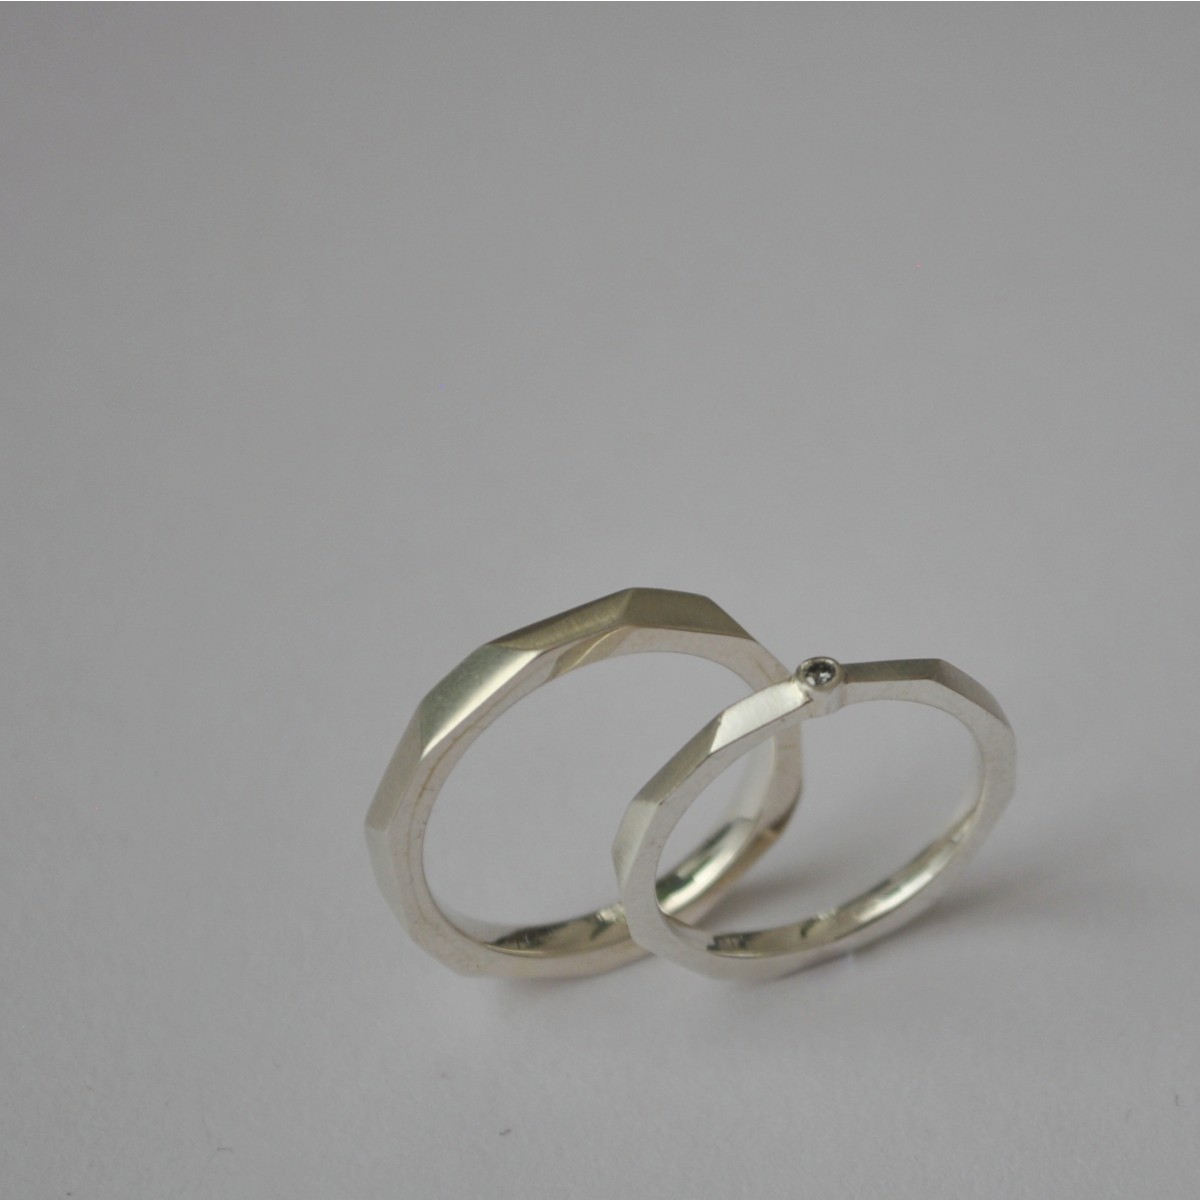 Ring "Verkantet" mit Brillant aus 925/- Silber von Doppelludwig